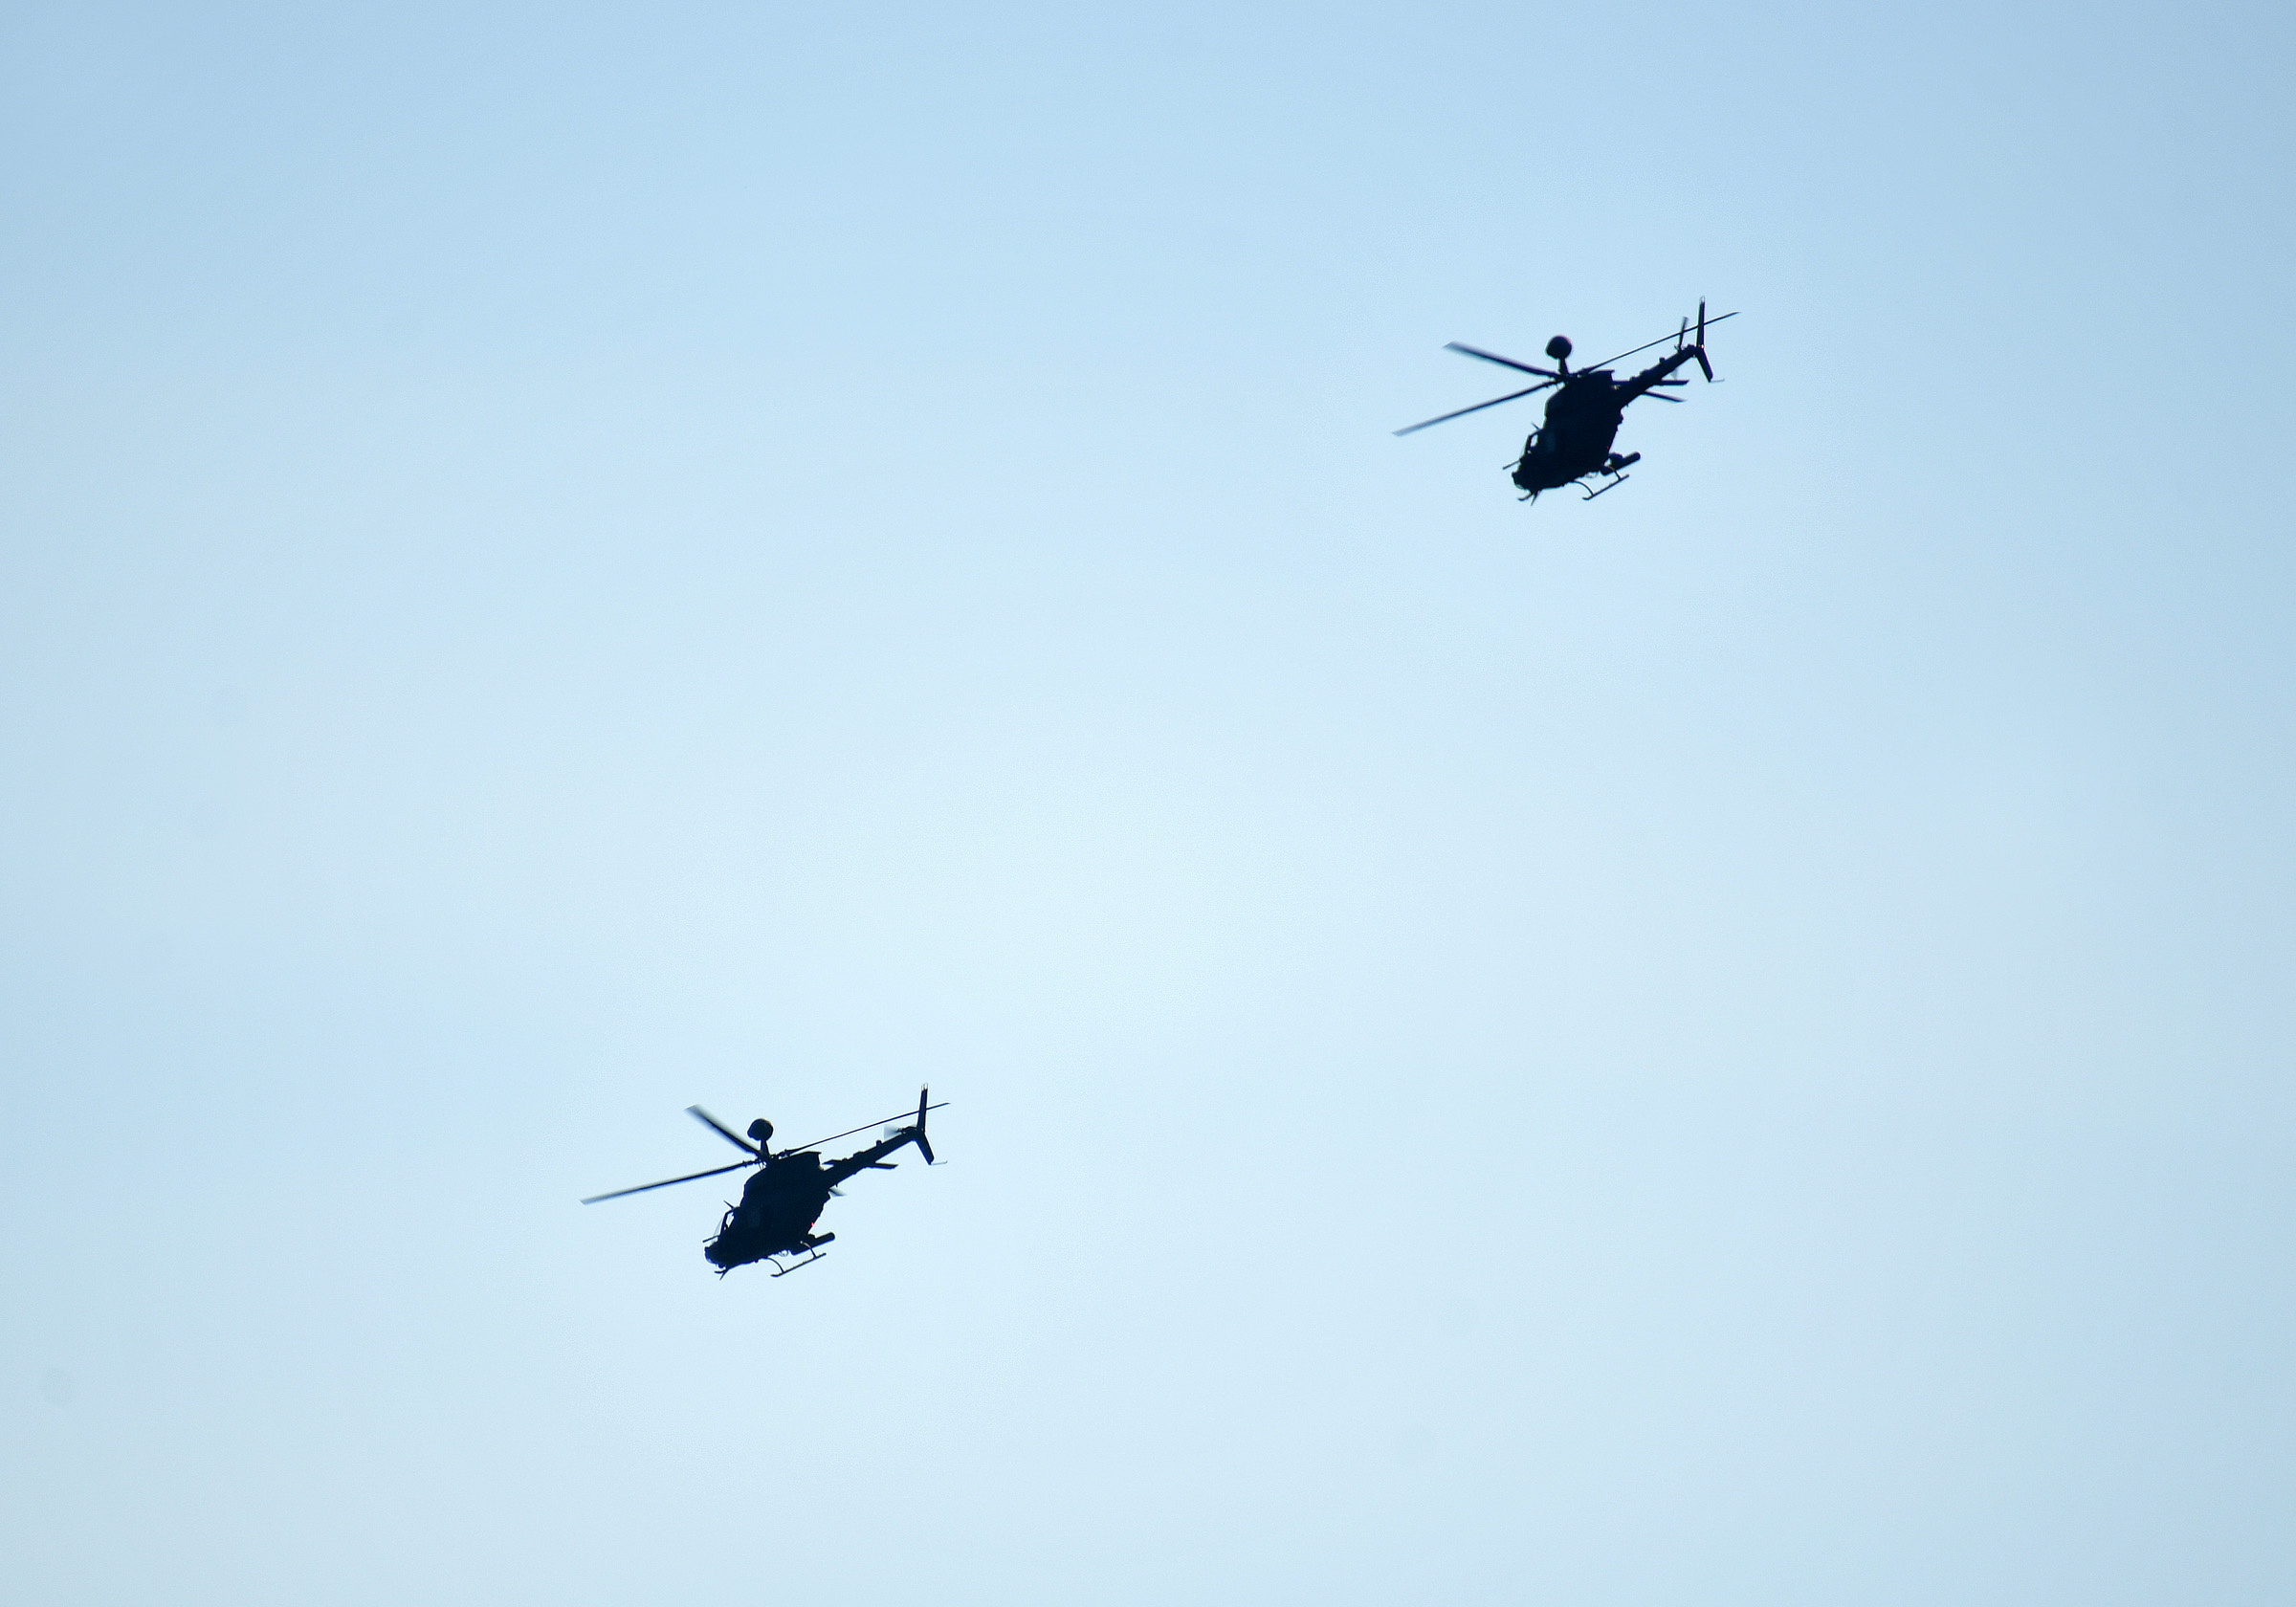 Provedena bojna gađanja i raketiranja iz helikoptera Kiowa Warrior